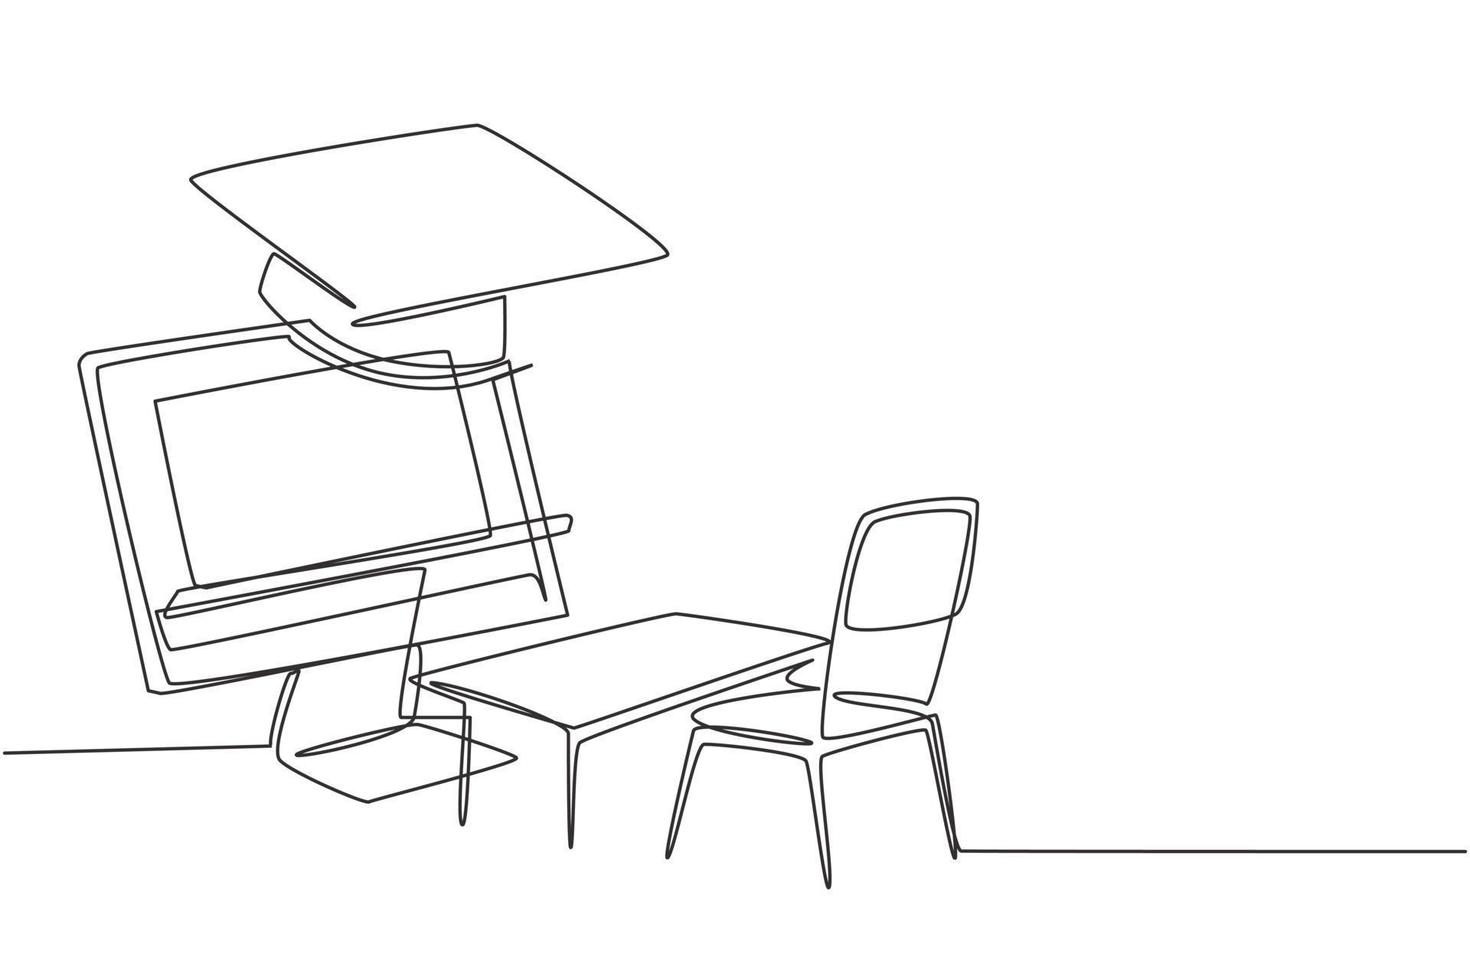 continue één lijntekening lege studiestoelen en bureaus tegenover een gigantisch beeldscherm met daarop een whiteboard en een afstudeerkap. enkele lijn tekenen ontwerp vector grafische afbeelding